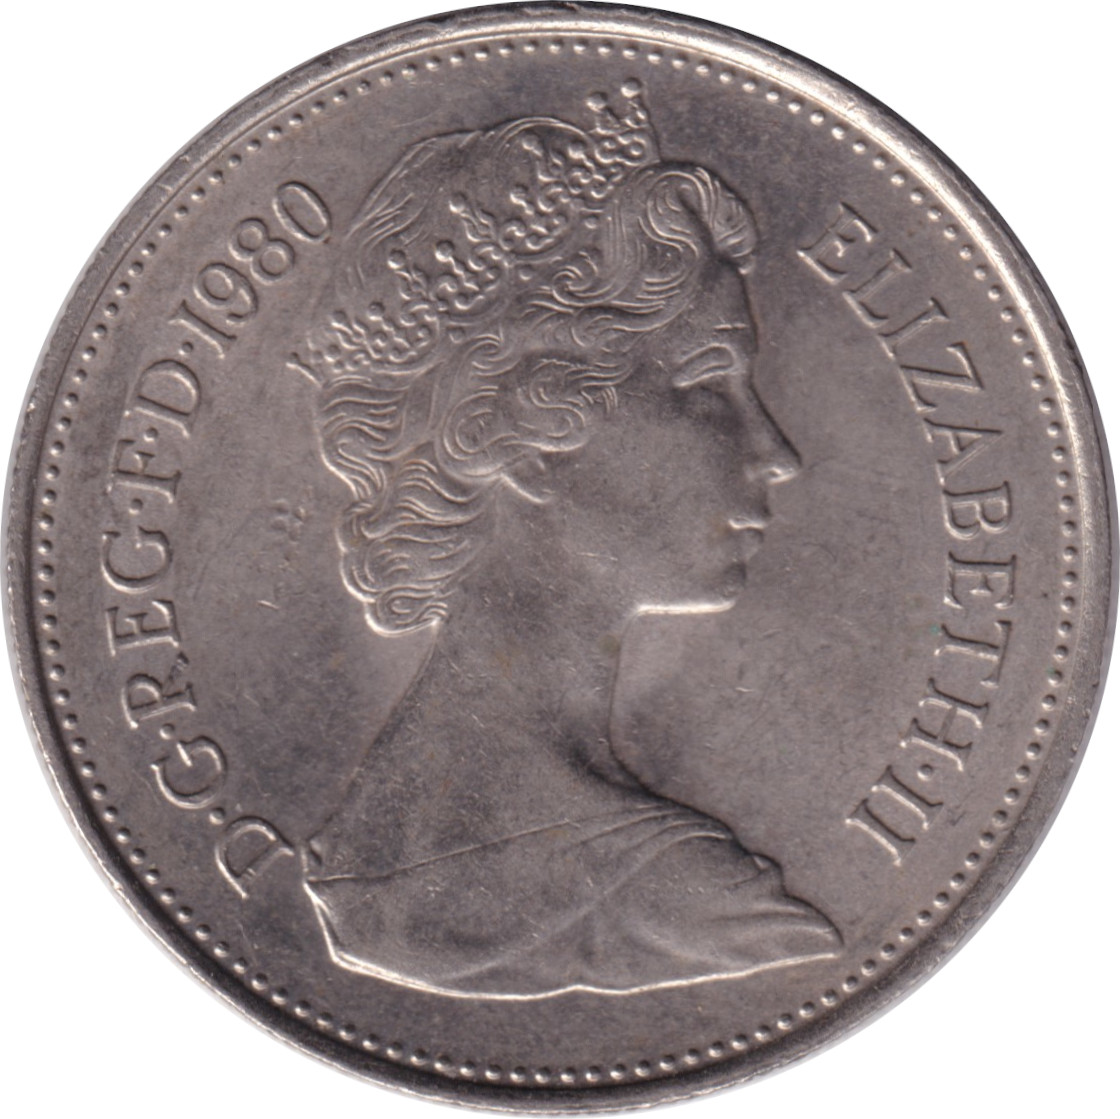 5 pence - Elizabeth II - Young bust